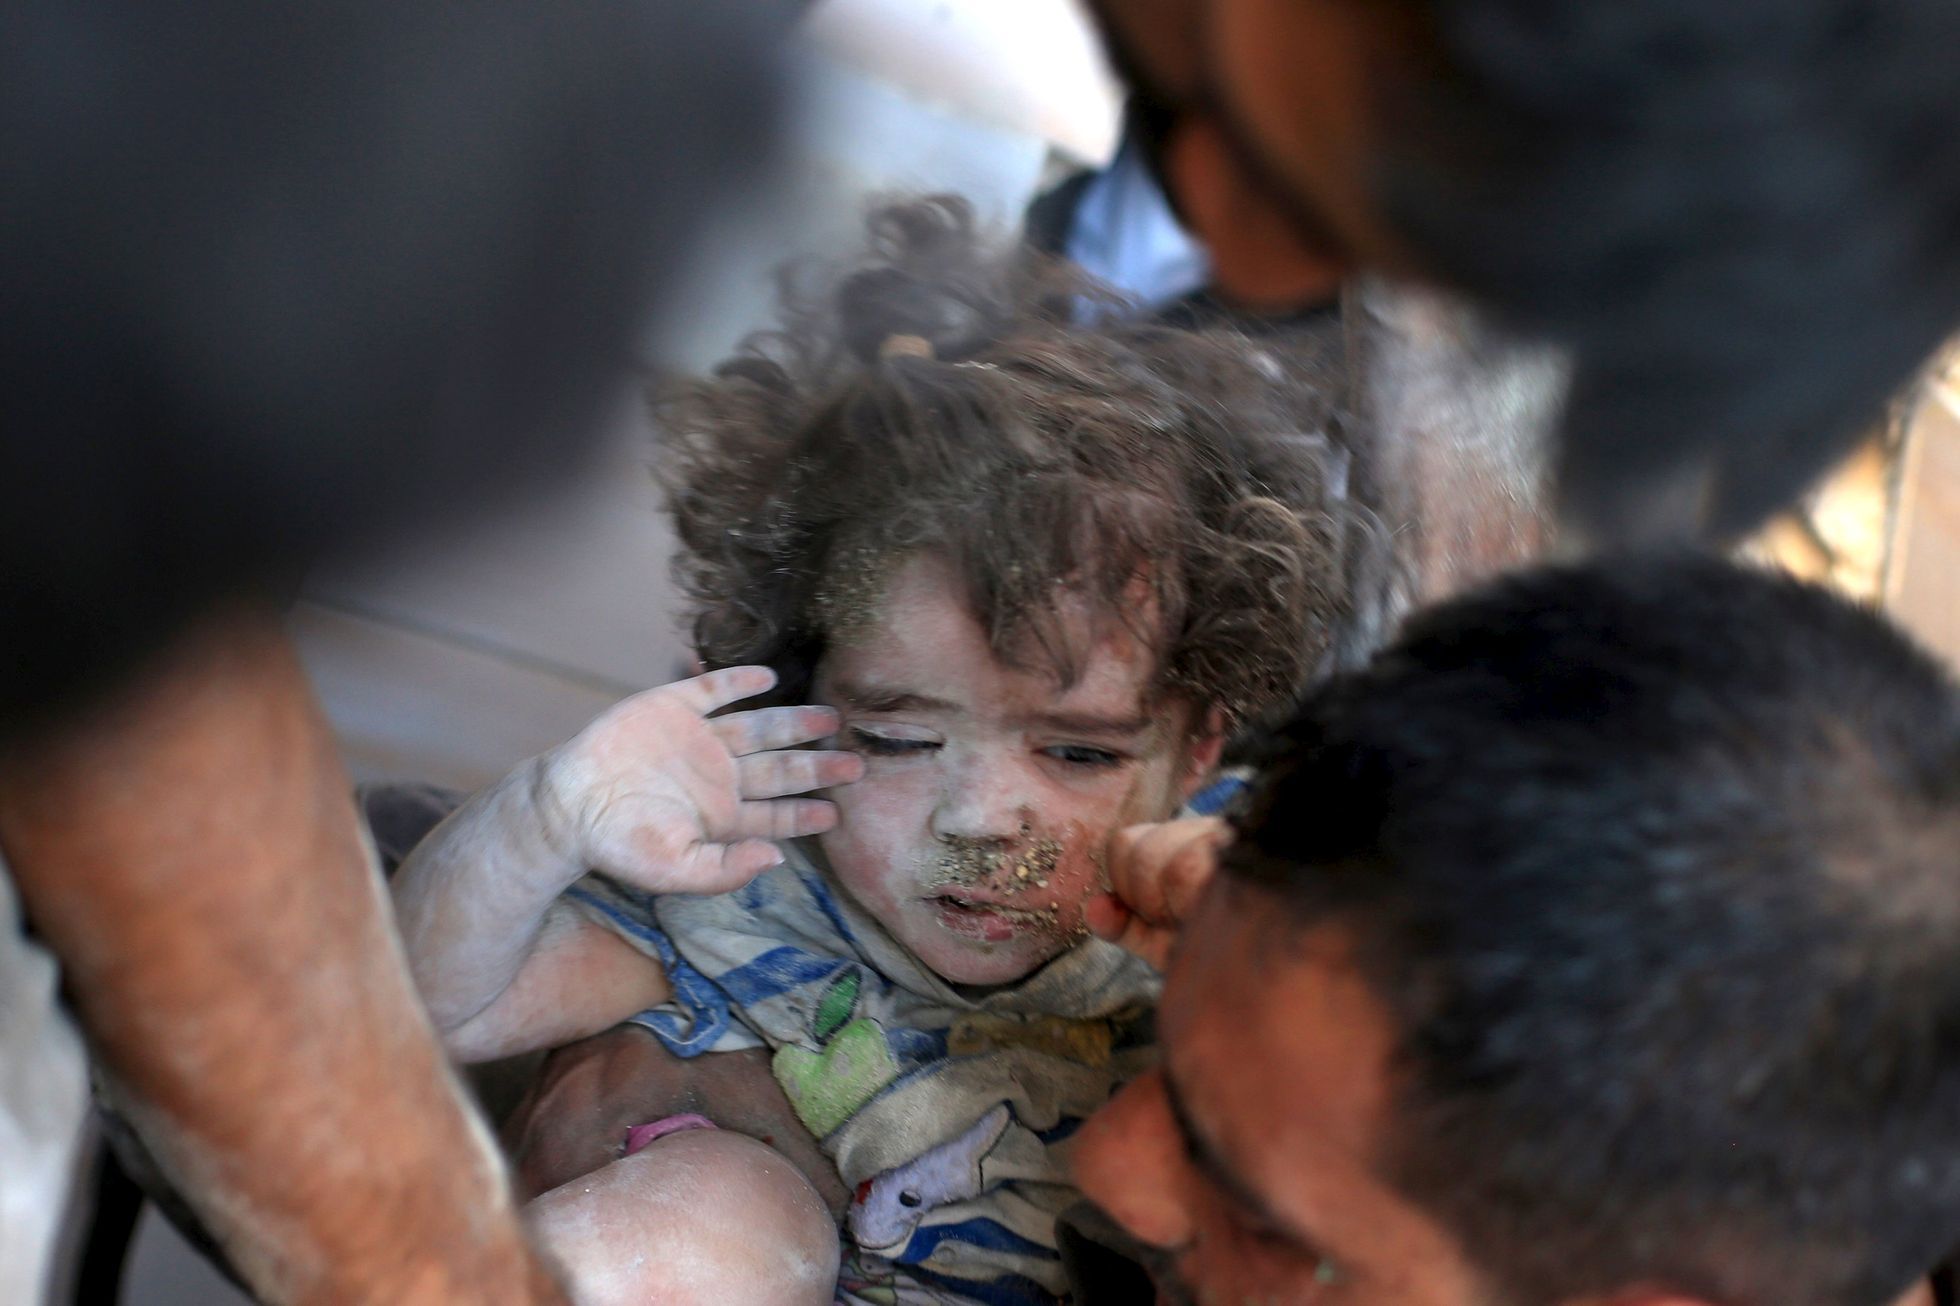 Syrské děti